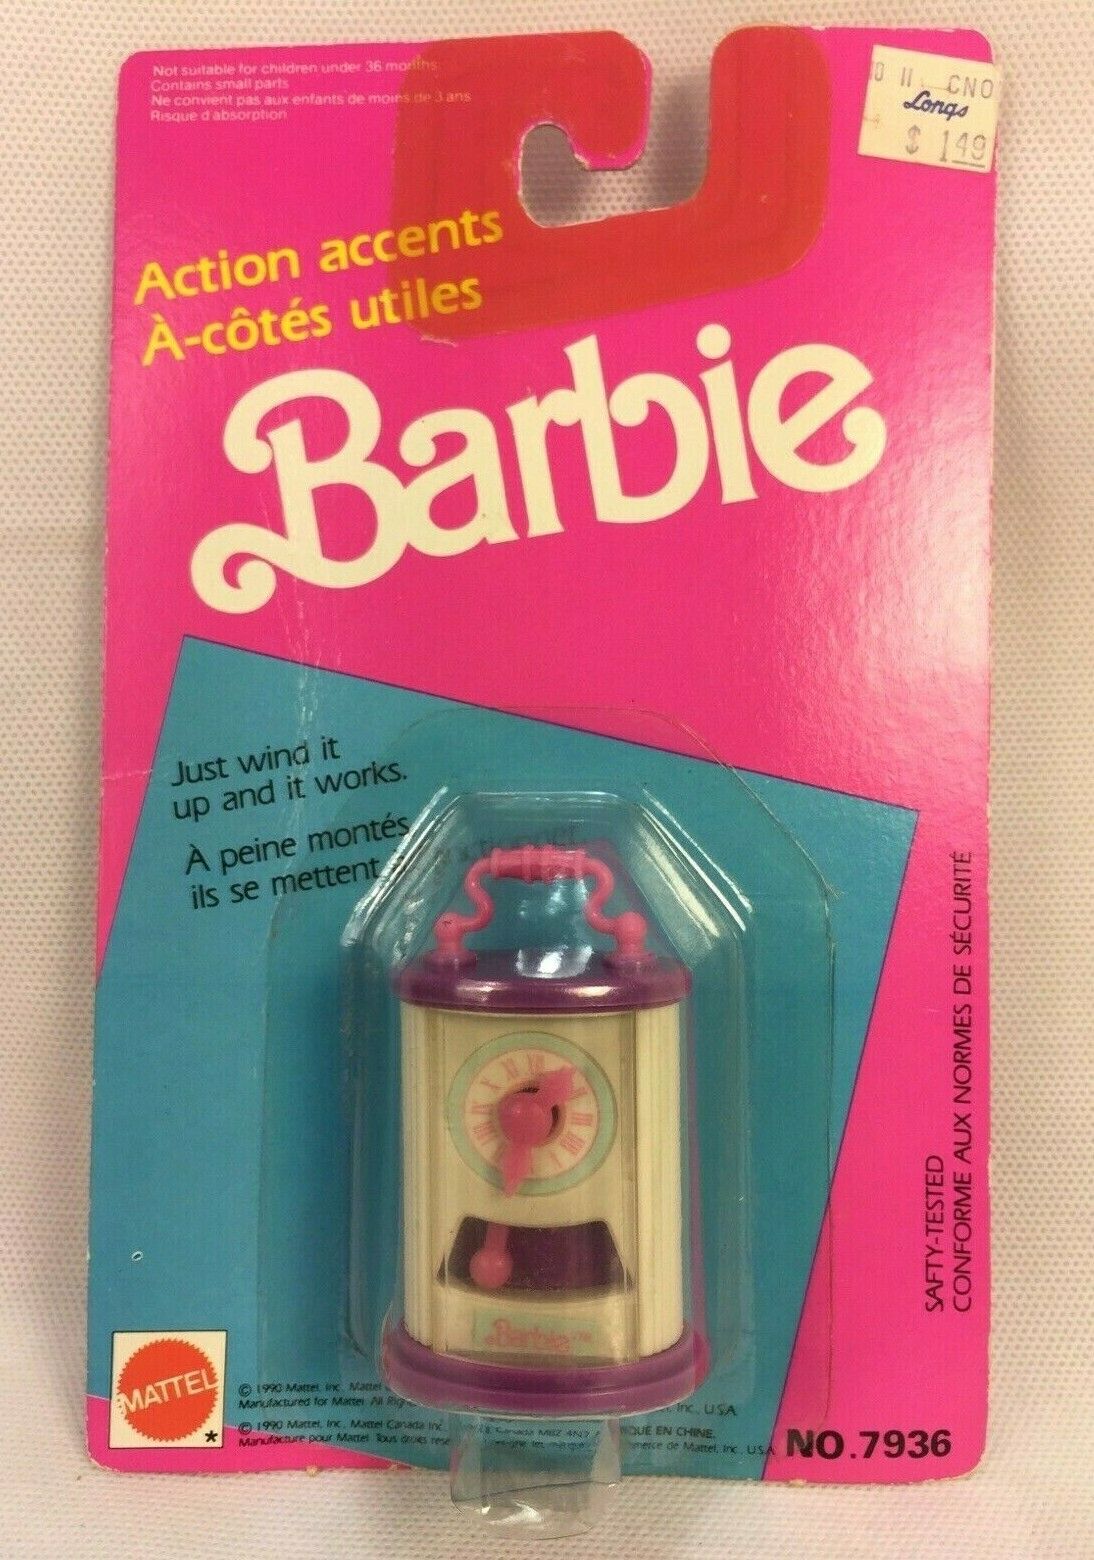 Barbie Wind Up Mantle Clock Dollhouse Vintage 1990 Mattel #7936 Action Accents